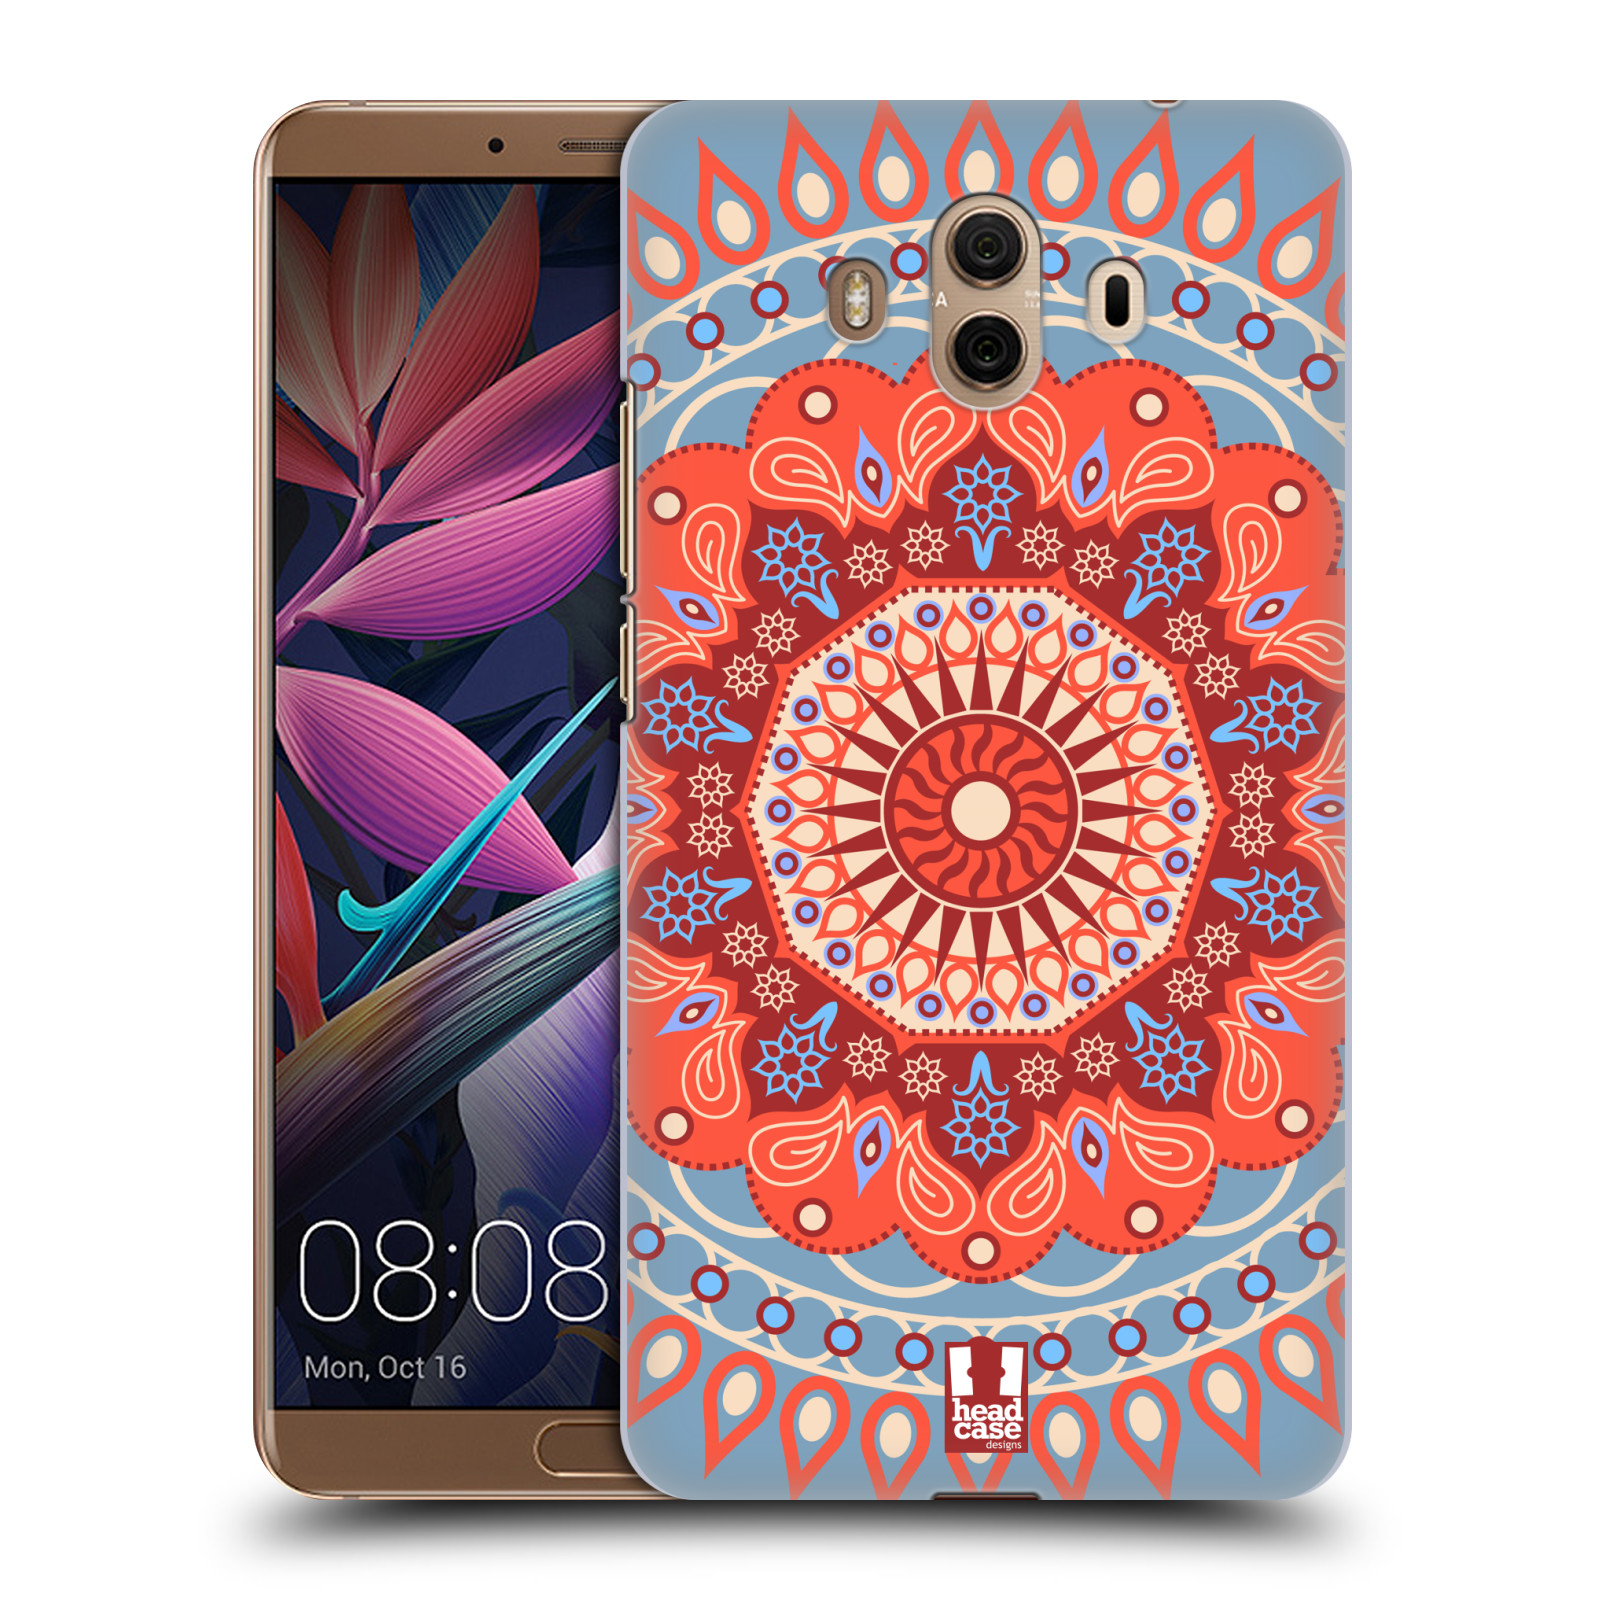 HEAD CASE plastový obal na mobil Huawei Mate 10 vzor Indie Mandala slunce barevný motiv ČERVENÁ A MODRÁ